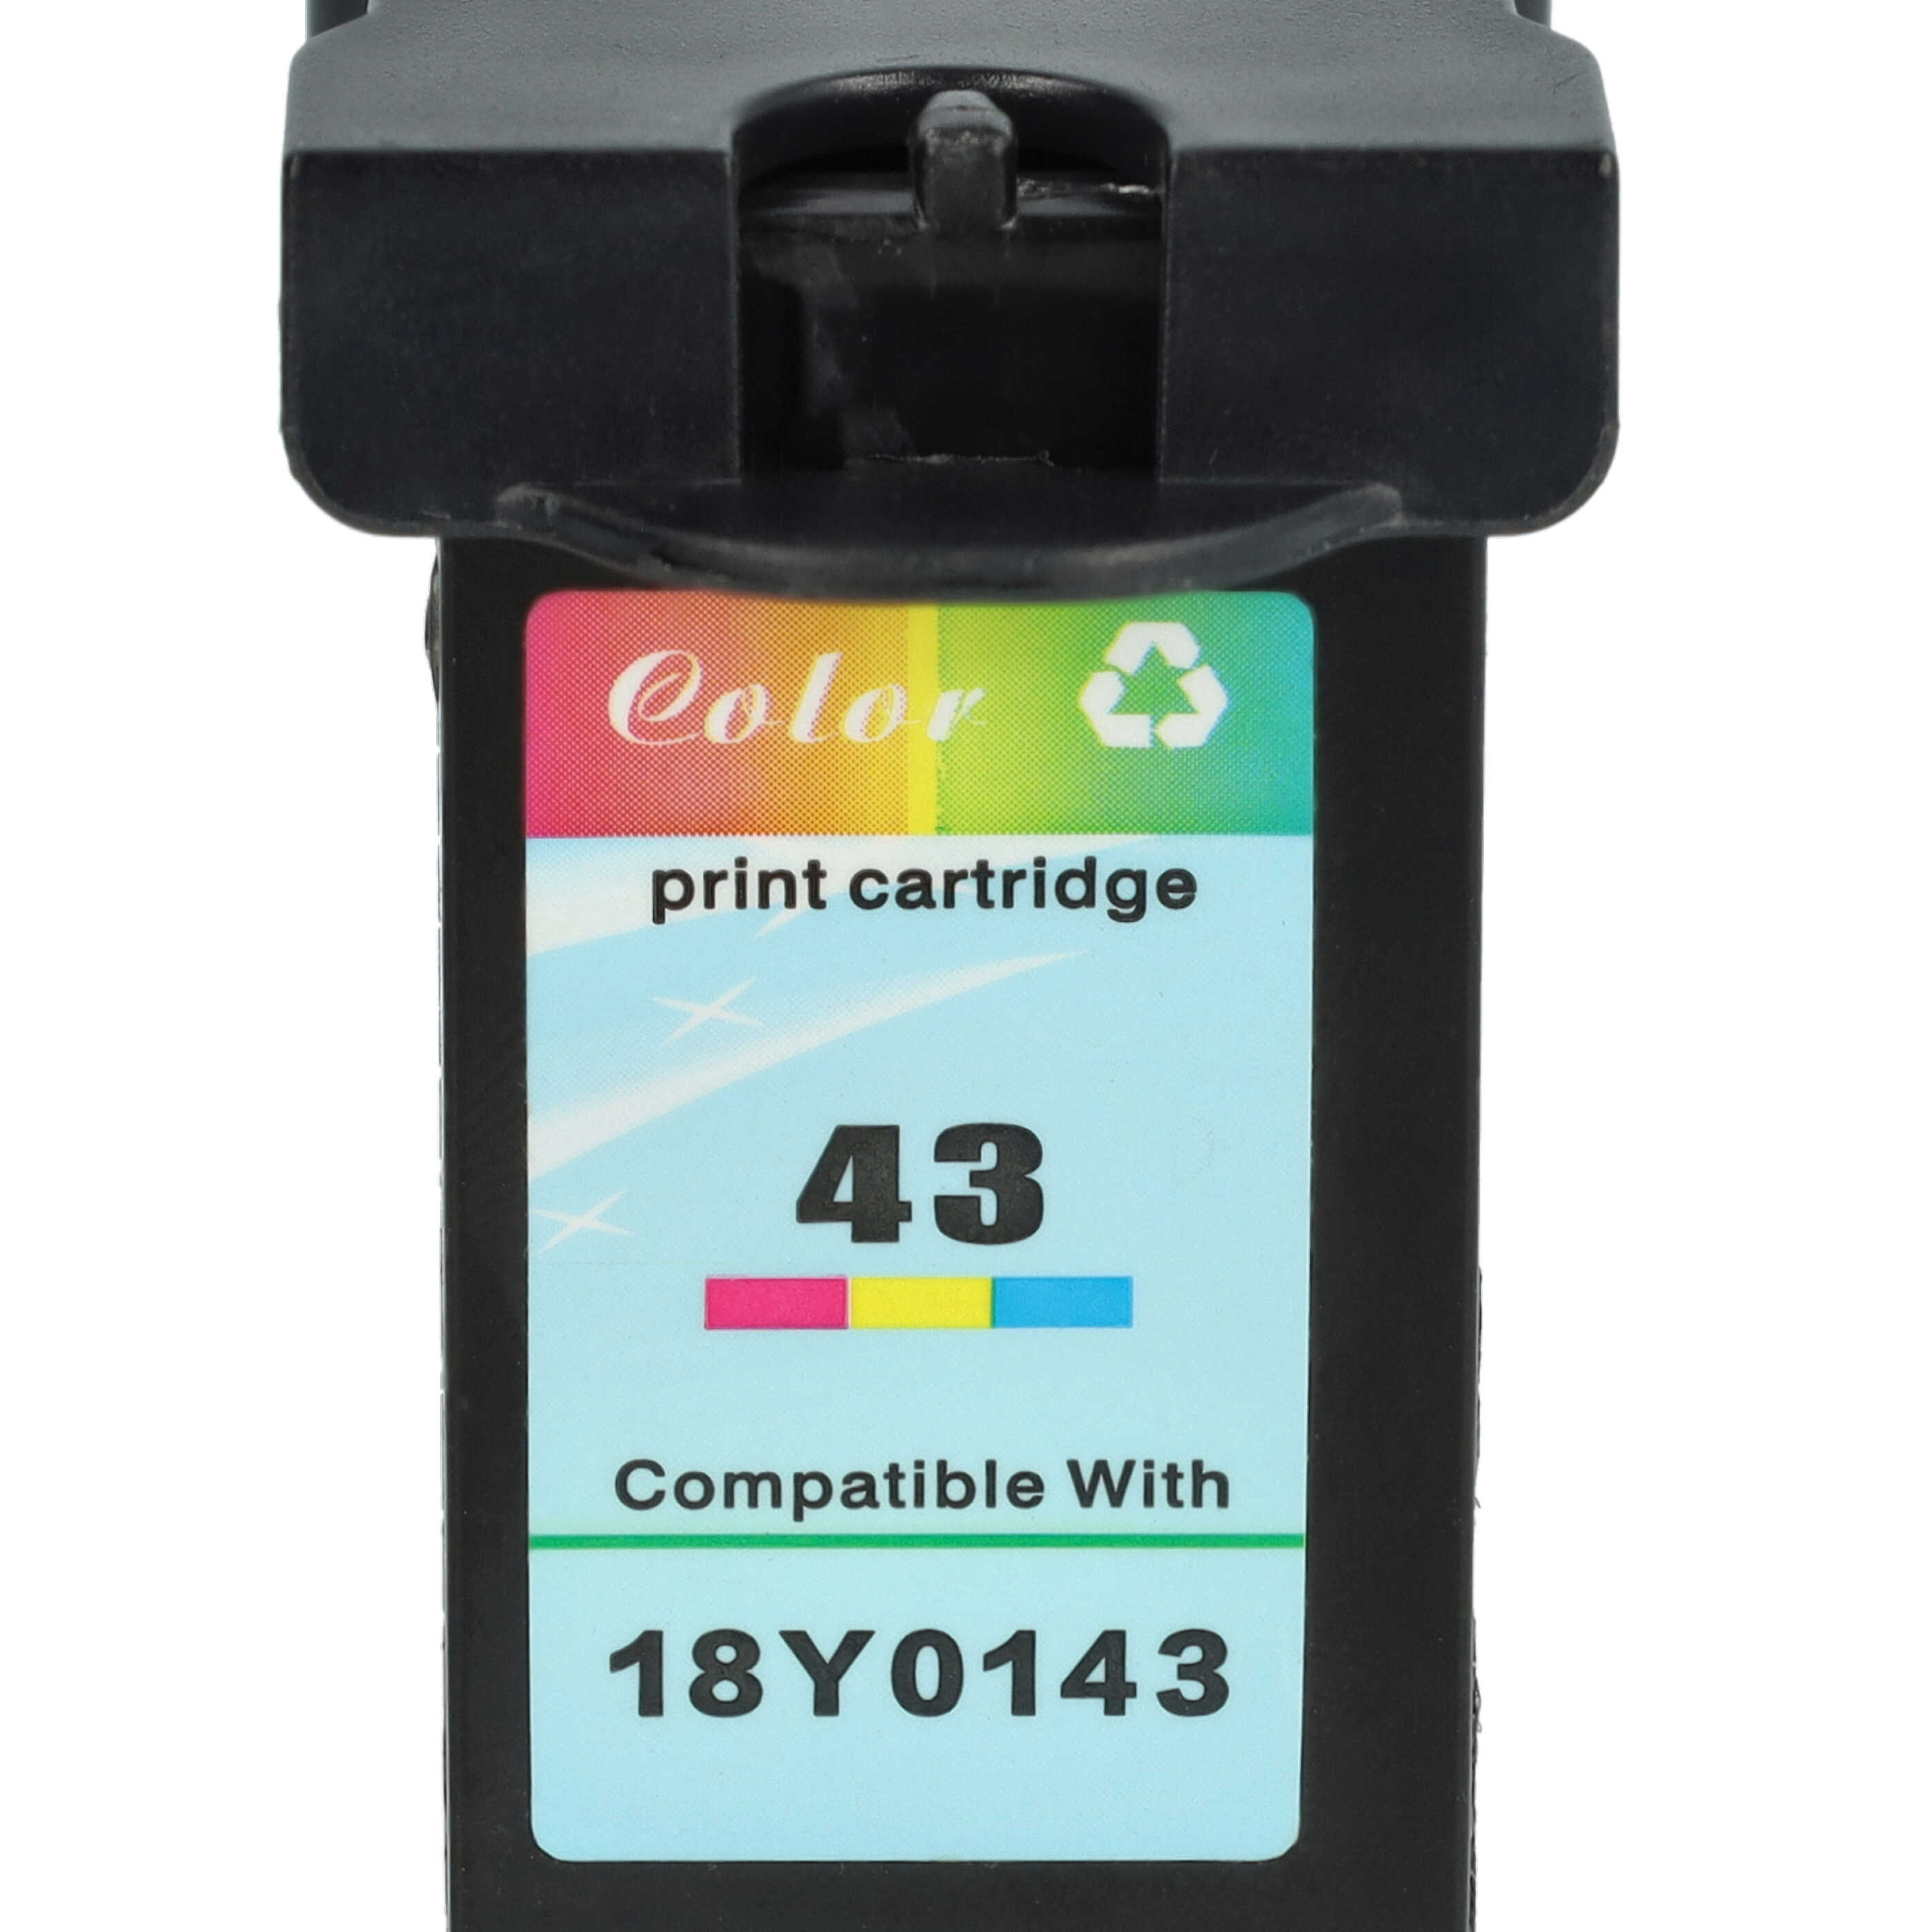 2x Cartouches remplace Lexmark 18Y0341E, 18Y0141E, 18Y0143, 18Y0142E, 18Y0144 pour imprimante - noir, CMY